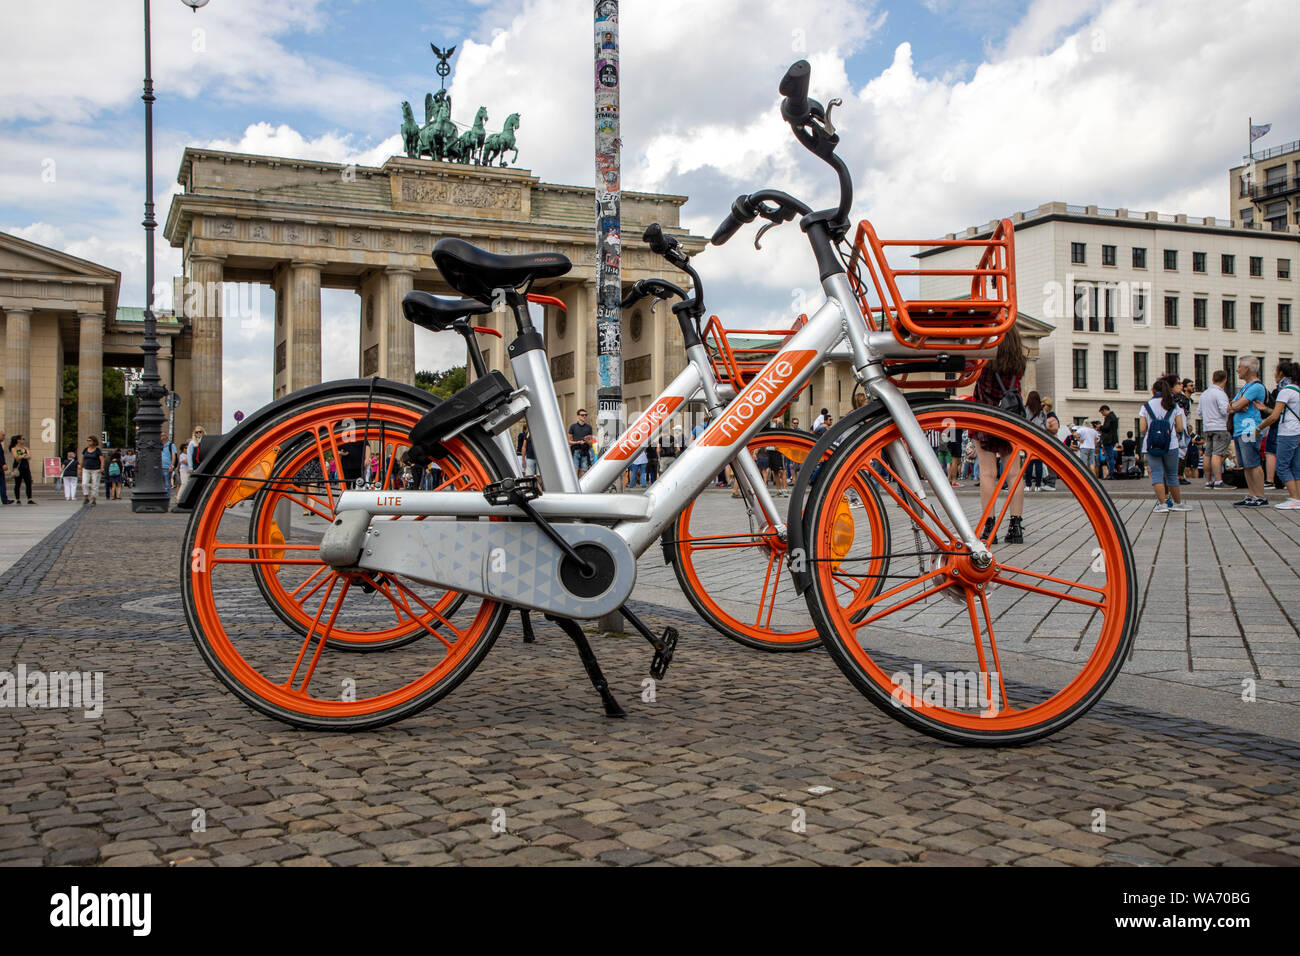 Vermietung Fahrrad, vom Anbieter Mobike, vor dem Brandenburger Tor, Berlin  Stockfotografie - Alamy